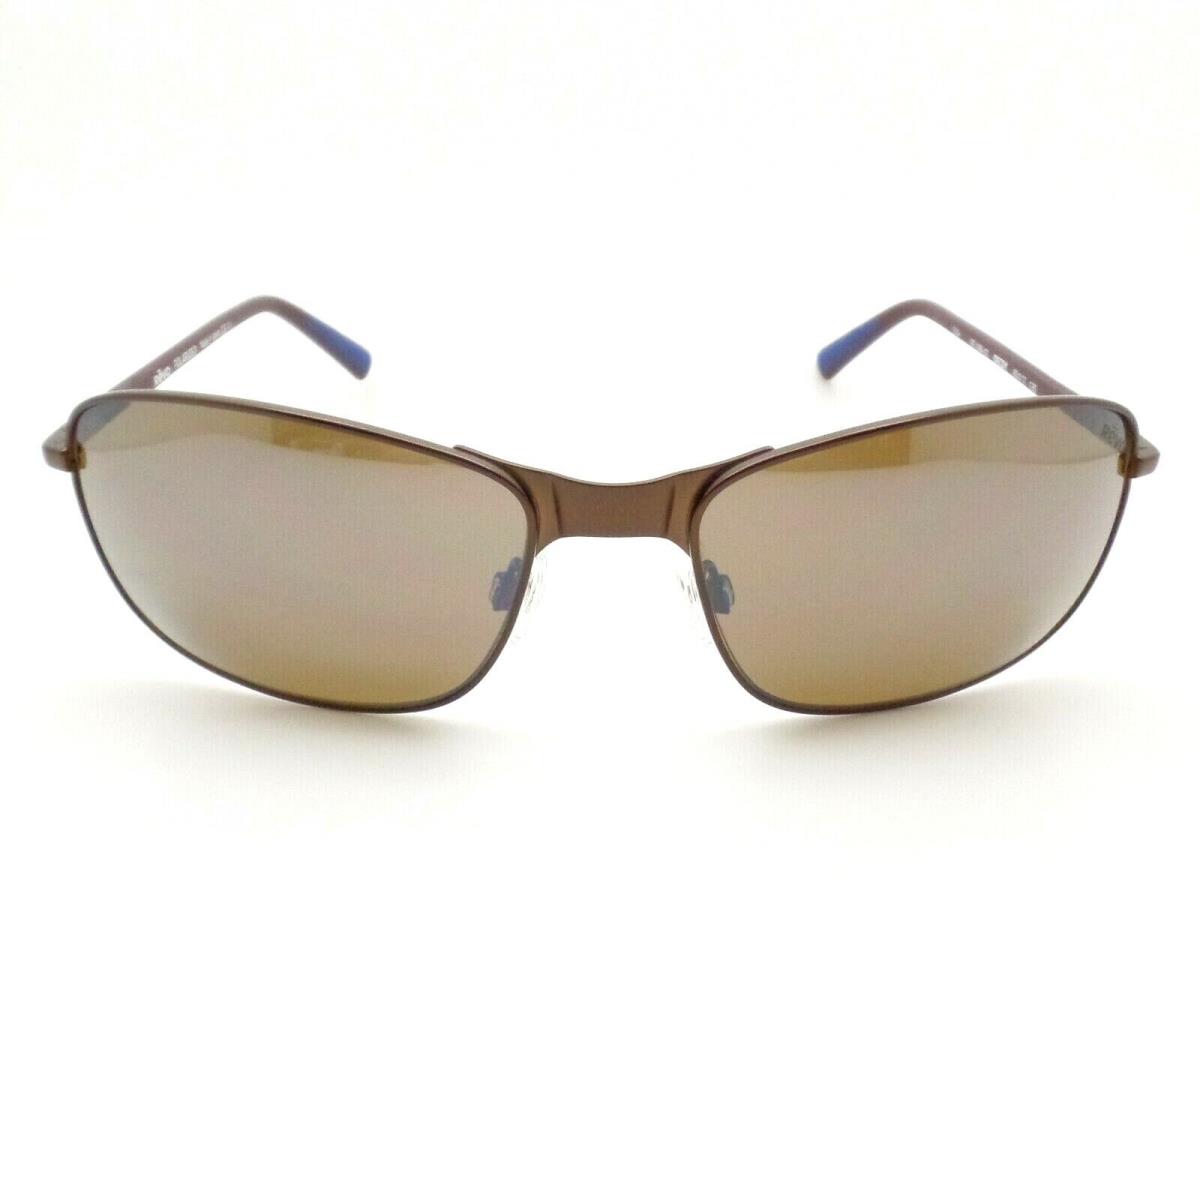 Revo sunglasses Decoy - Brown Frame, Terra Lens